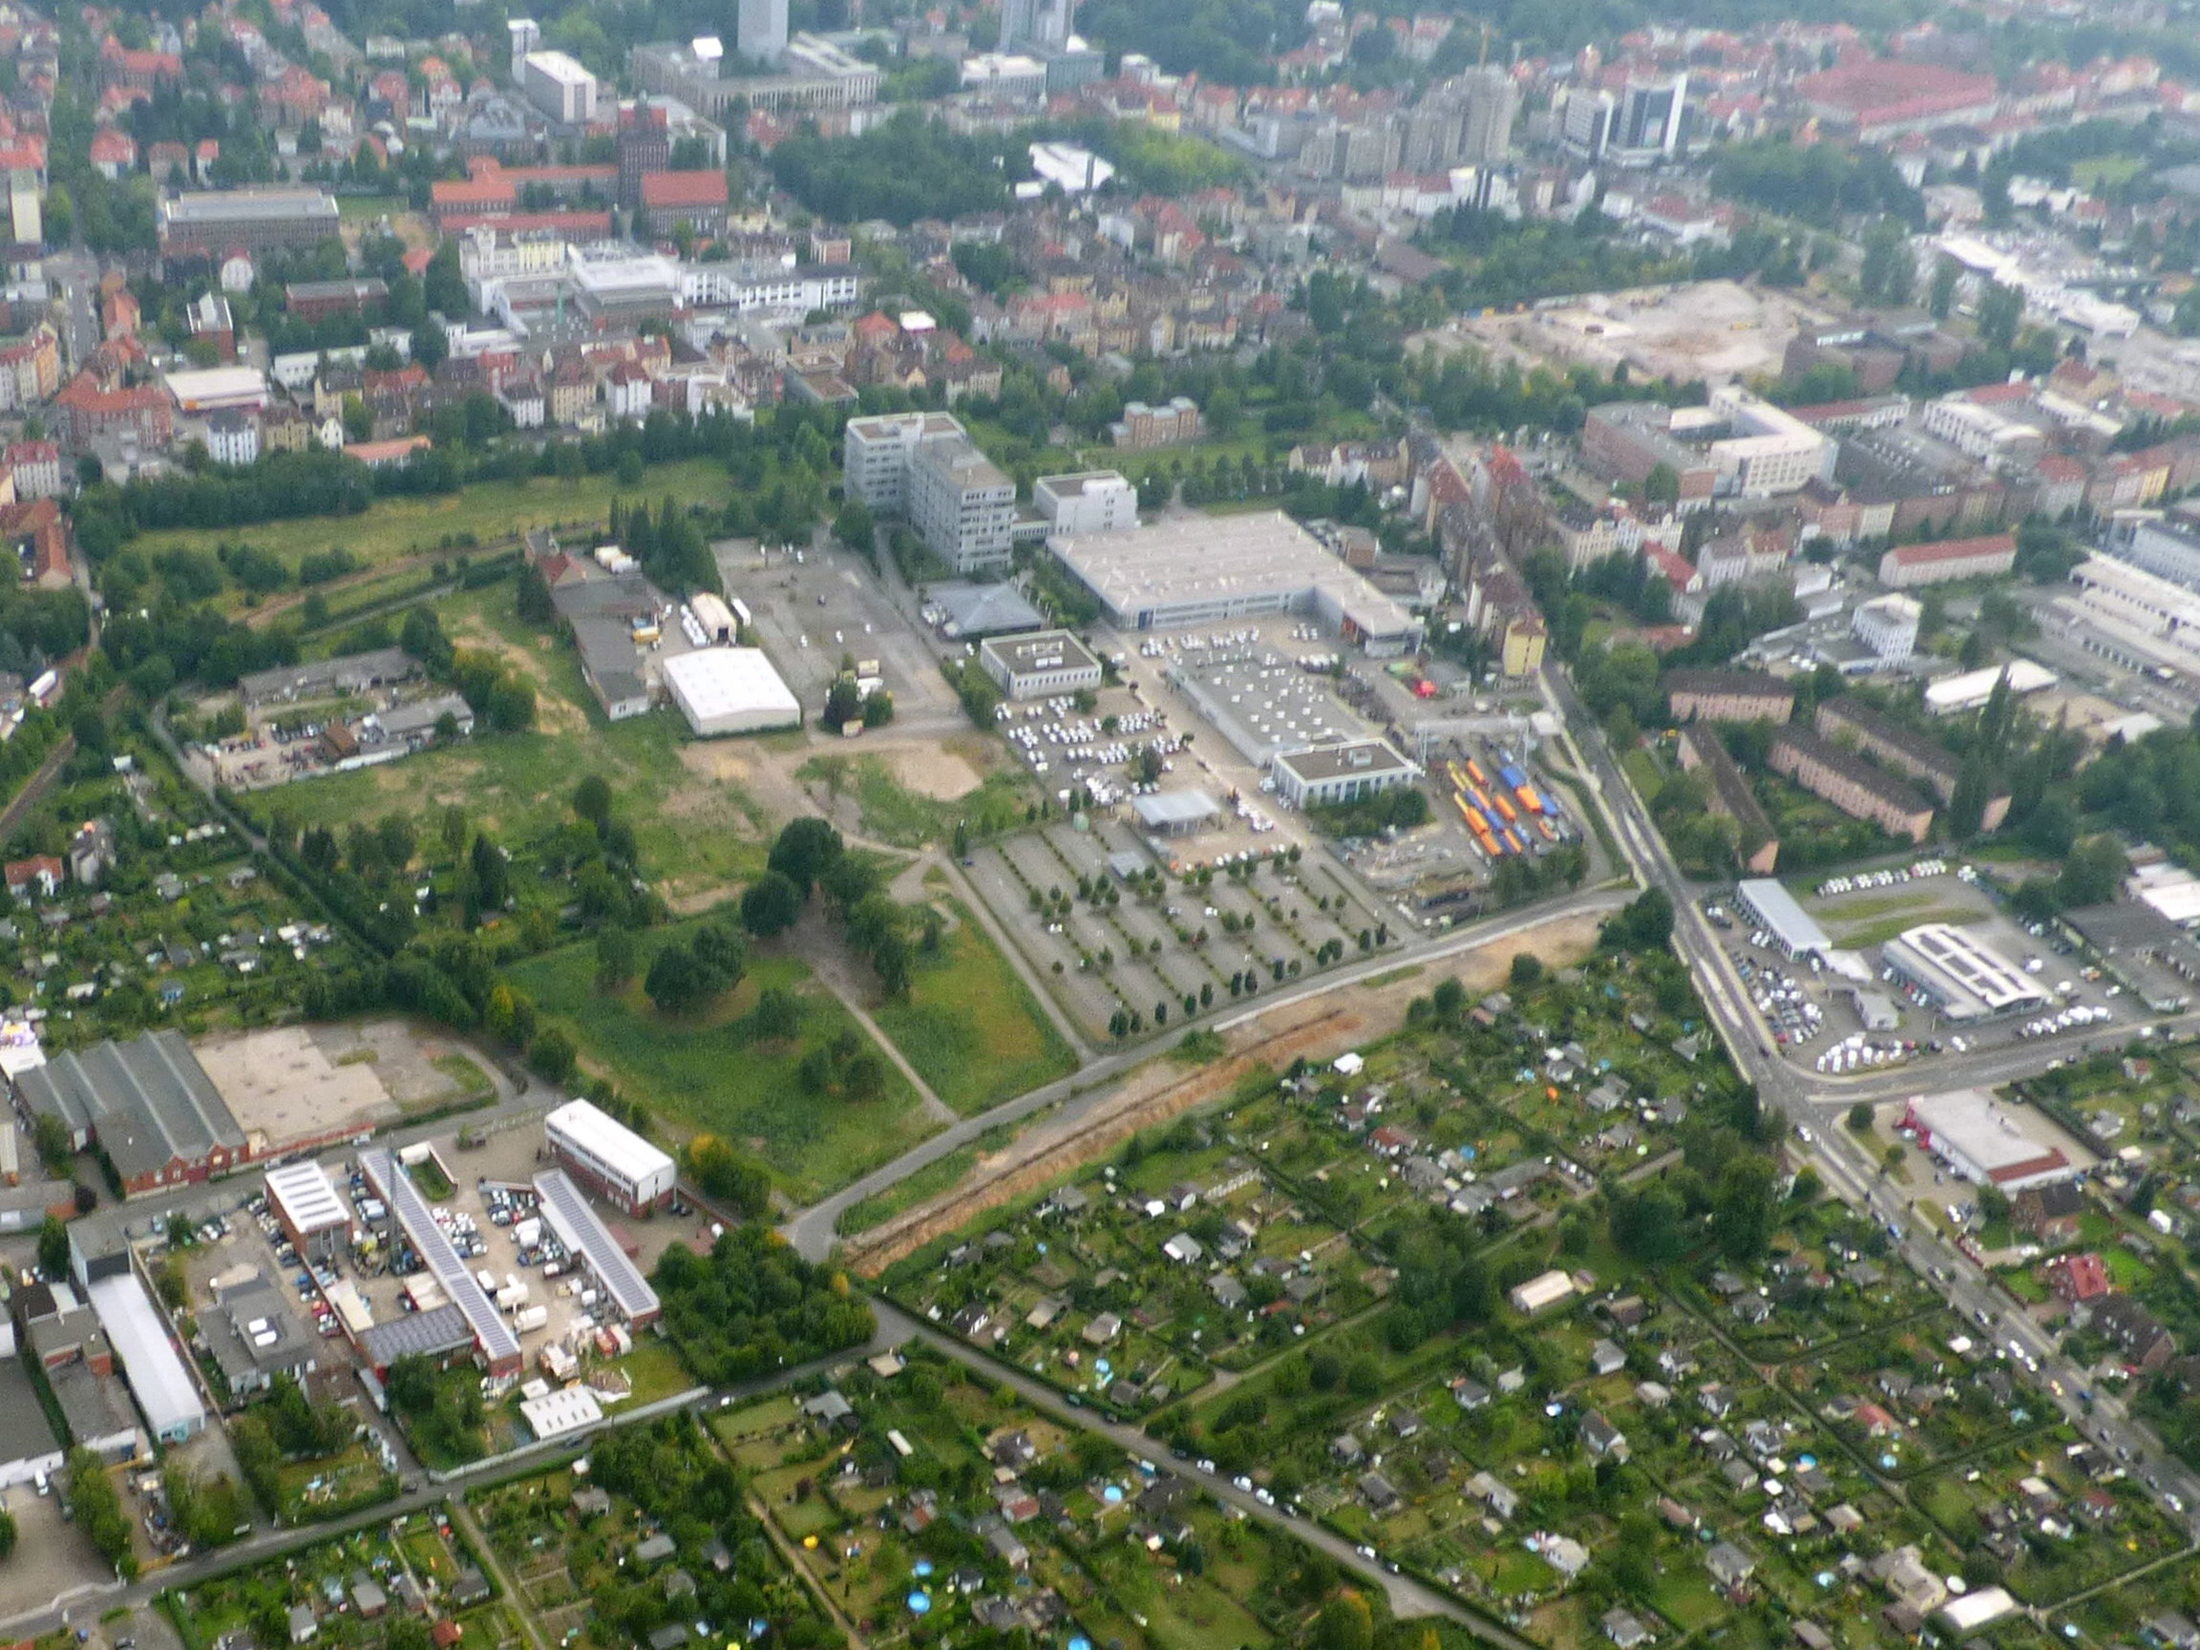 Luftbild Baugebiet Taubenstraße August 2015 (Wird bei Klick vergrößert)